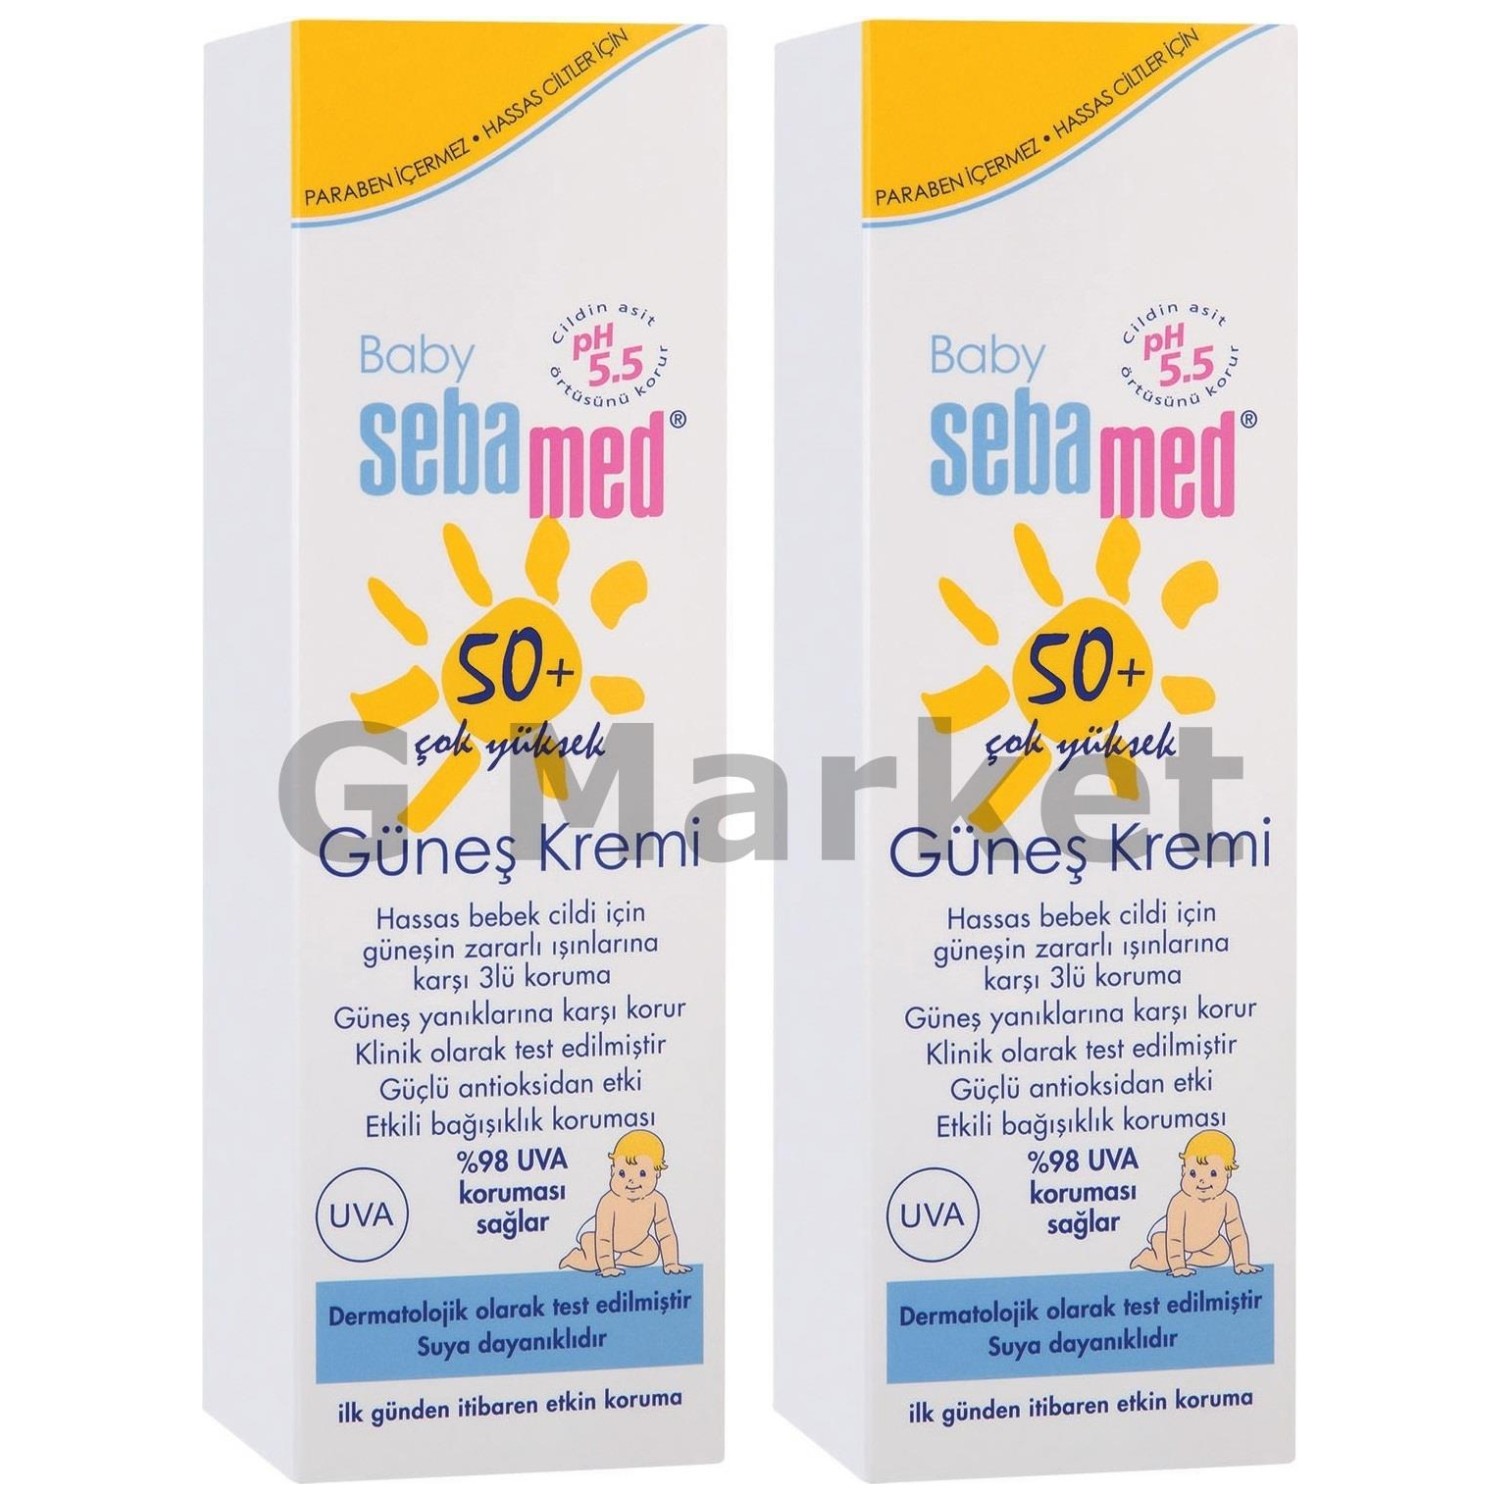 Солнцезащитный крем Sebamed Baby SPF 50+, 2 флакона по 75 мл цена и фото